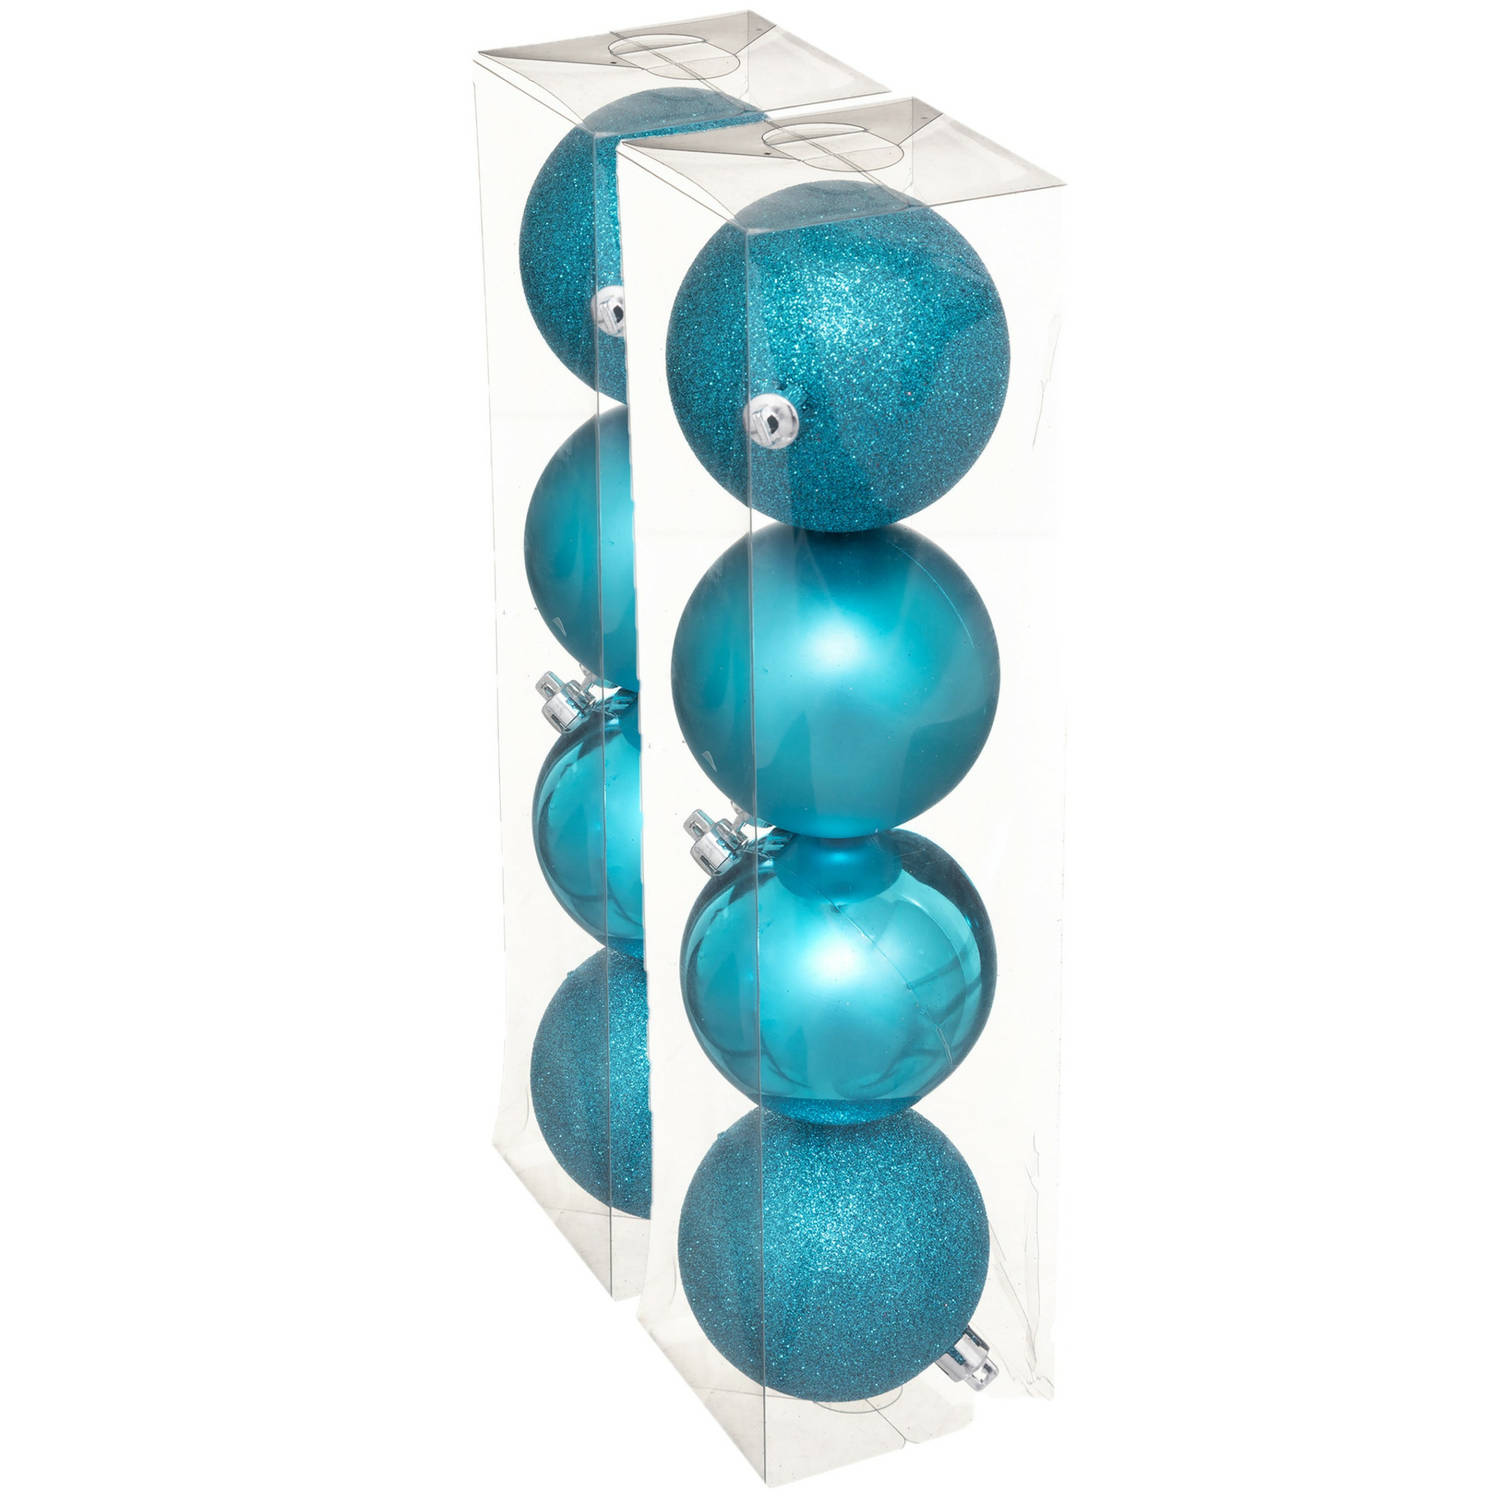 8x stuks kerstballen turquoise blauw mix kunststof 8 cm Kerstbal